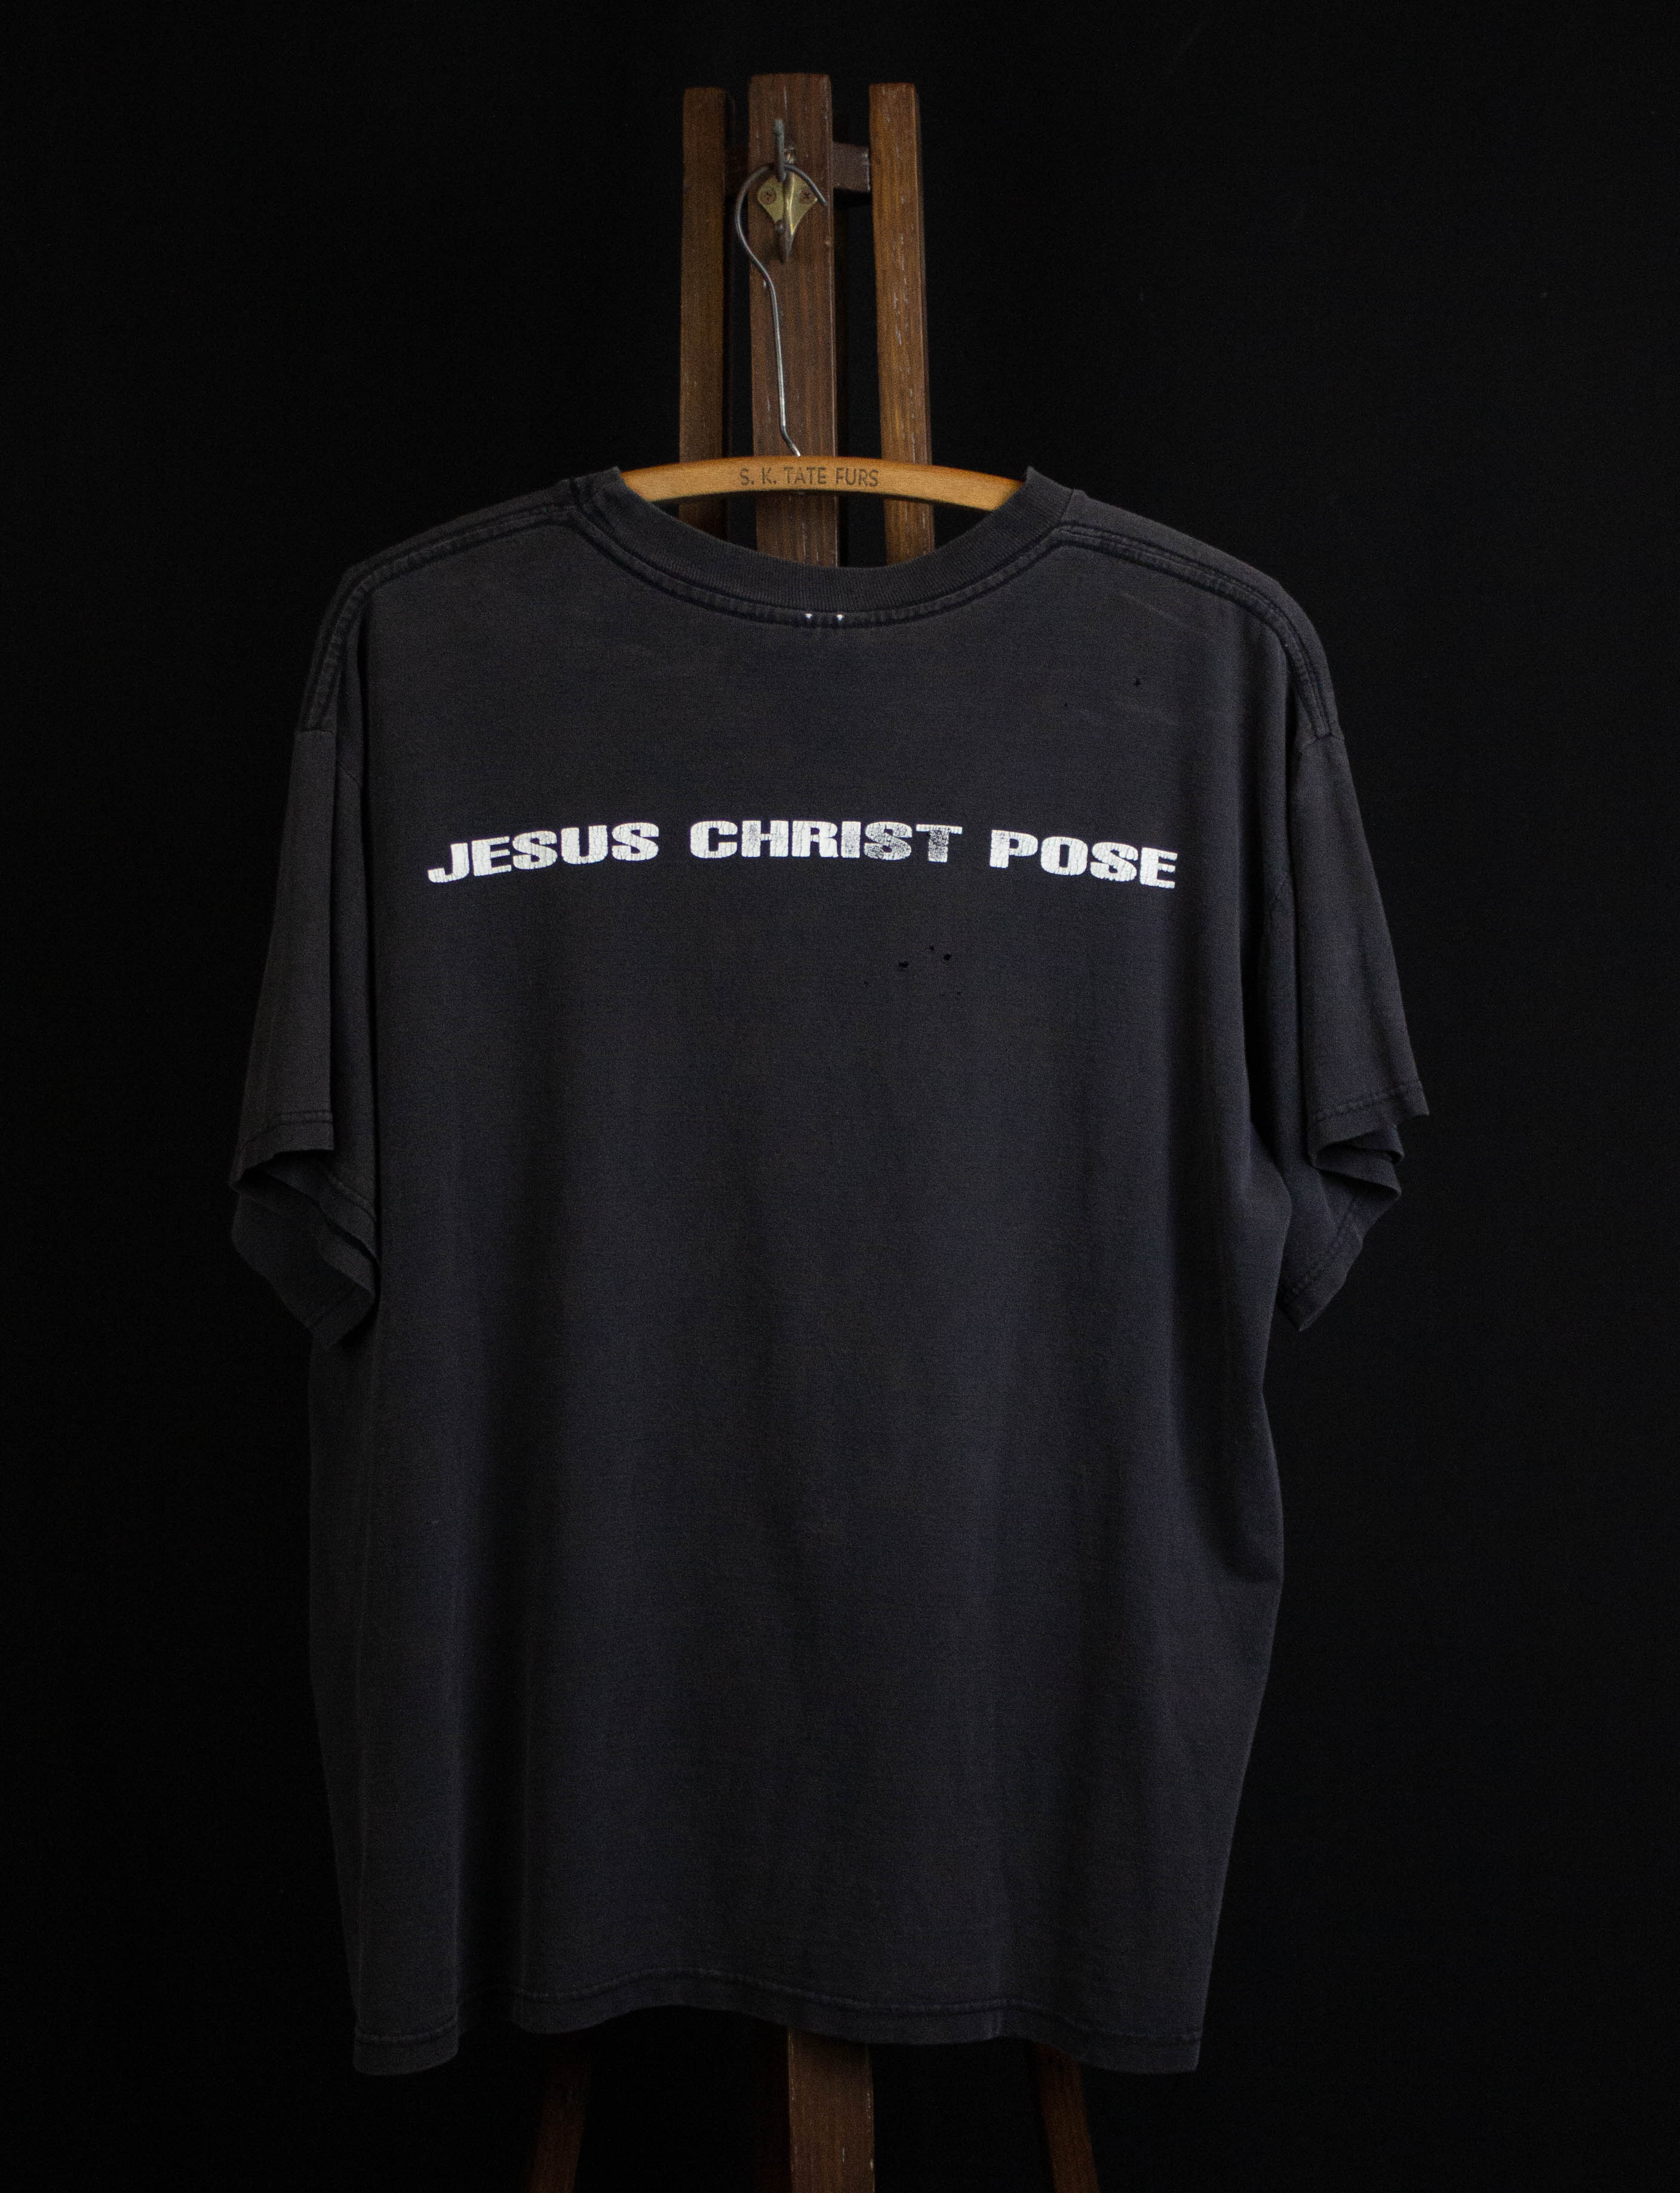 Soundgarden - Jesus Christ Pose HQ (Pinkpop Festival 92) - YouTube